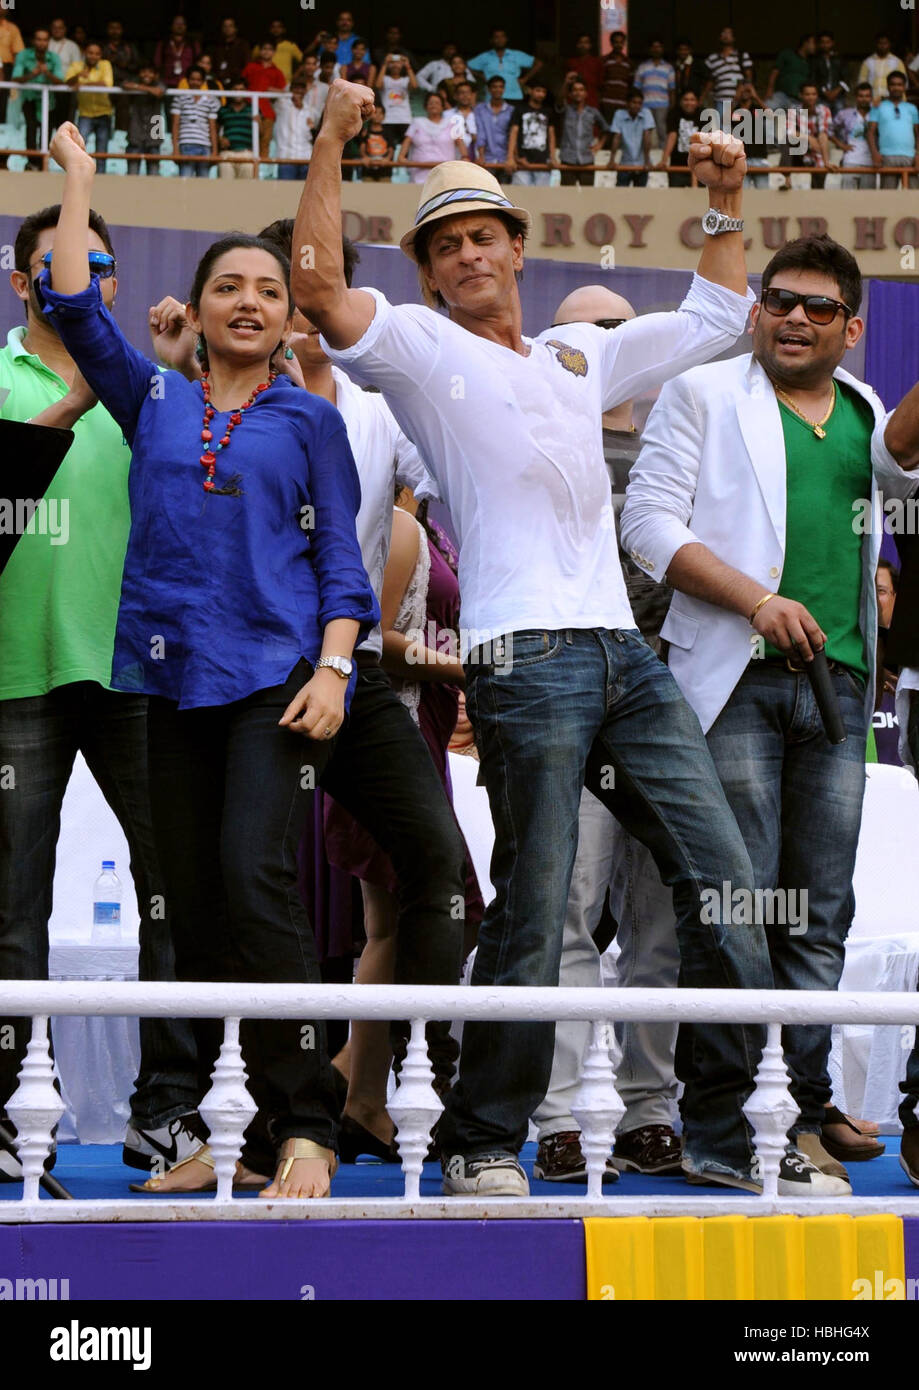 Bollywood actor Shah Rukh Khan dancing celebrating Kolkata Knight Riders team members grand victory parade Calcutta Kolkata India Stock Photo